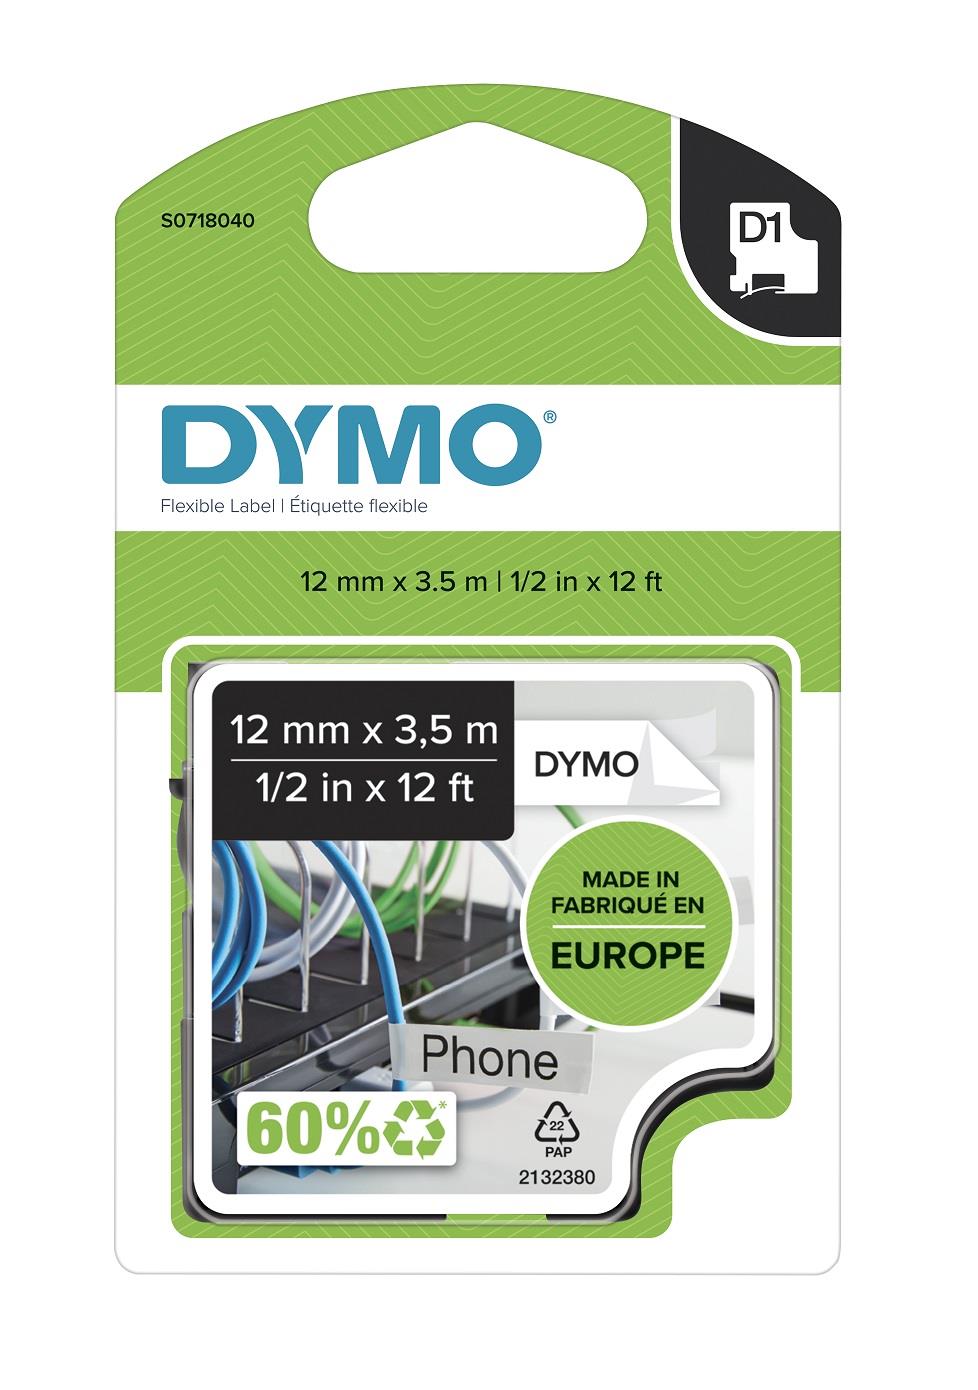 DYMO páska D1 flexibilní nylonová, 12 mm x 3,5 m, černá na bílé, S0718040